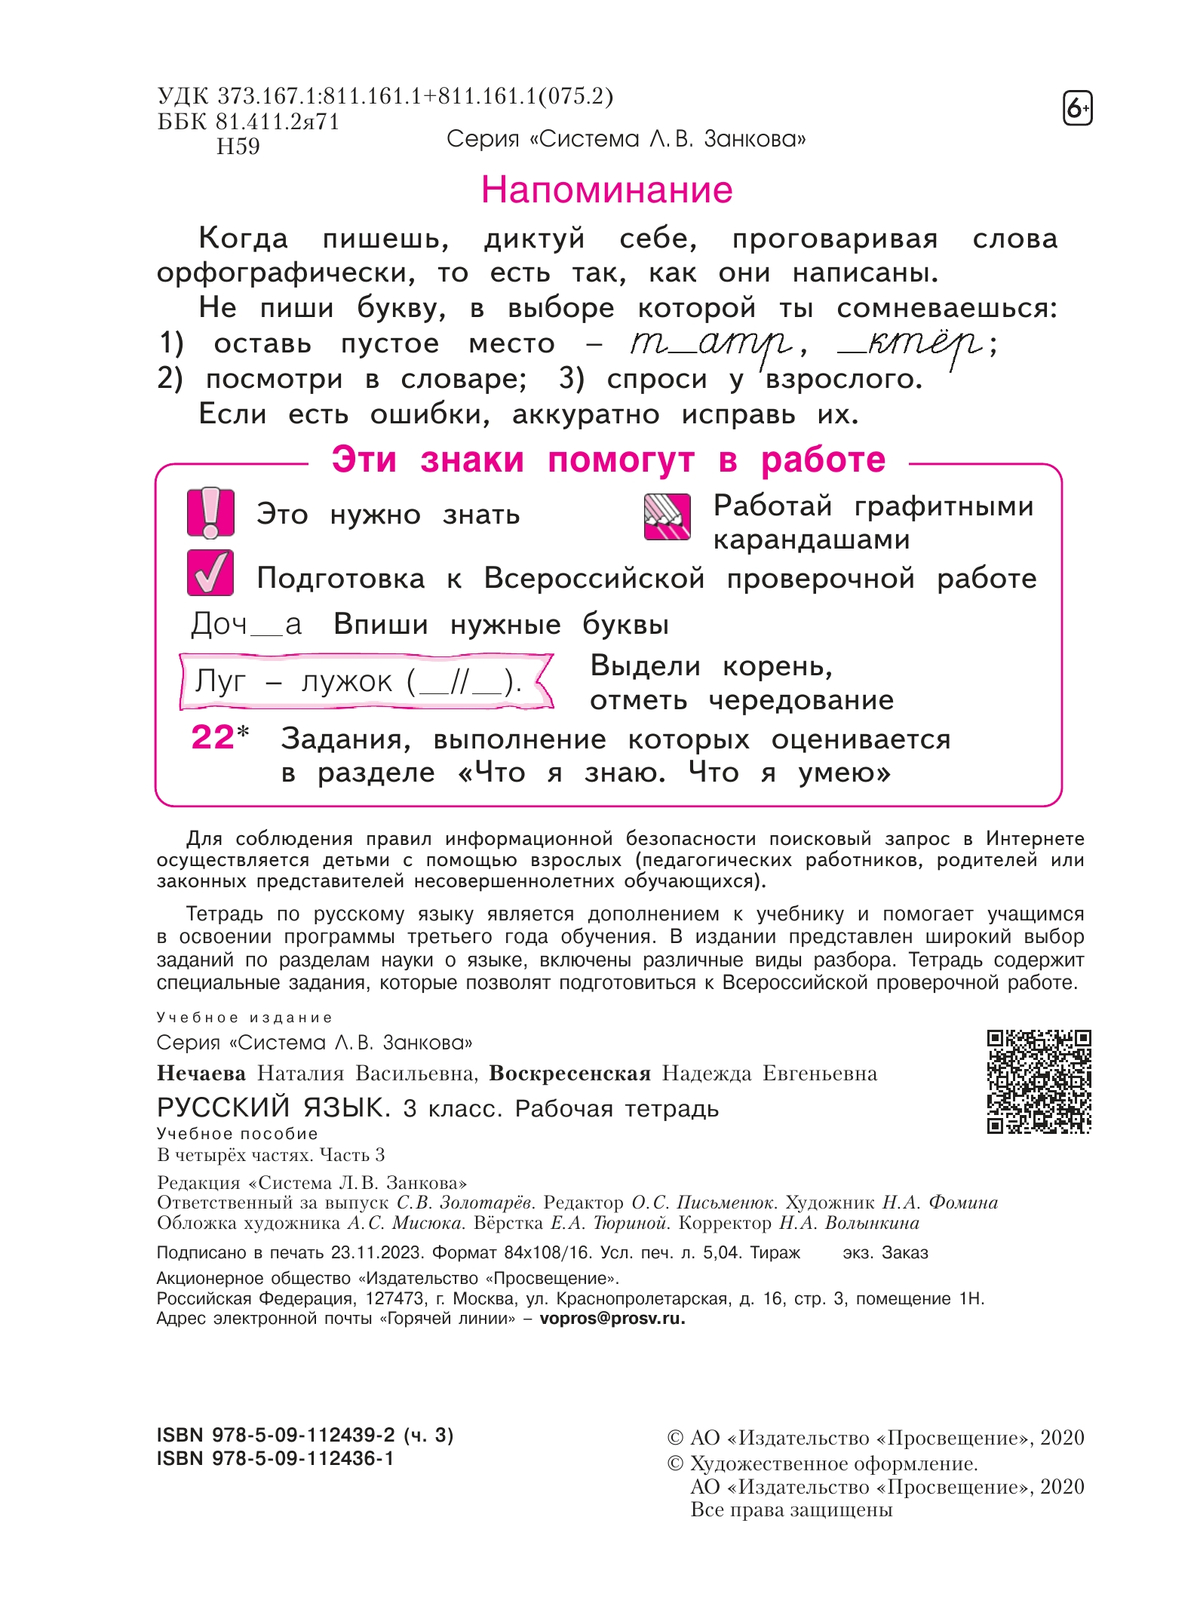 Русский язык. Рабочая тетрадь. 3 класс. В 4-х частях. Часть 3 2